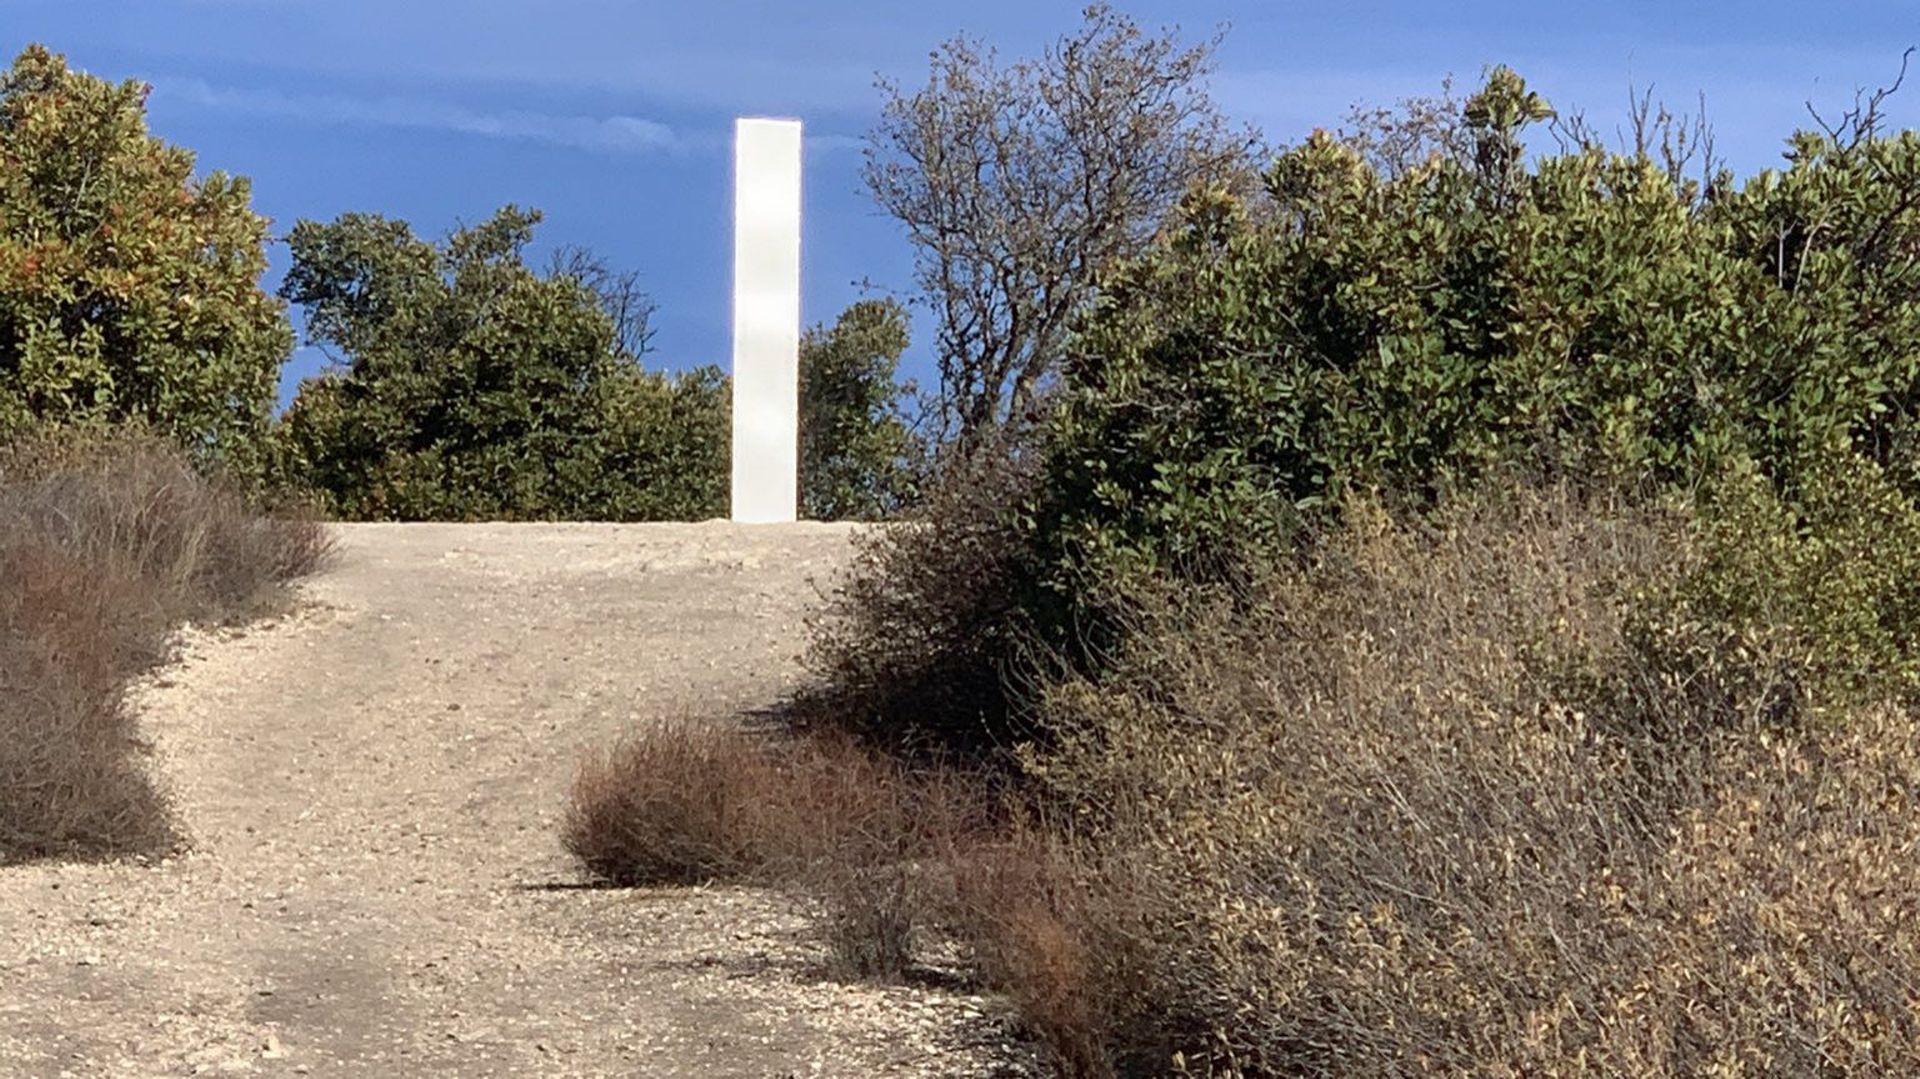 La saga des "monolithes" continue : une nouvelle sculpture est apparue en Californie